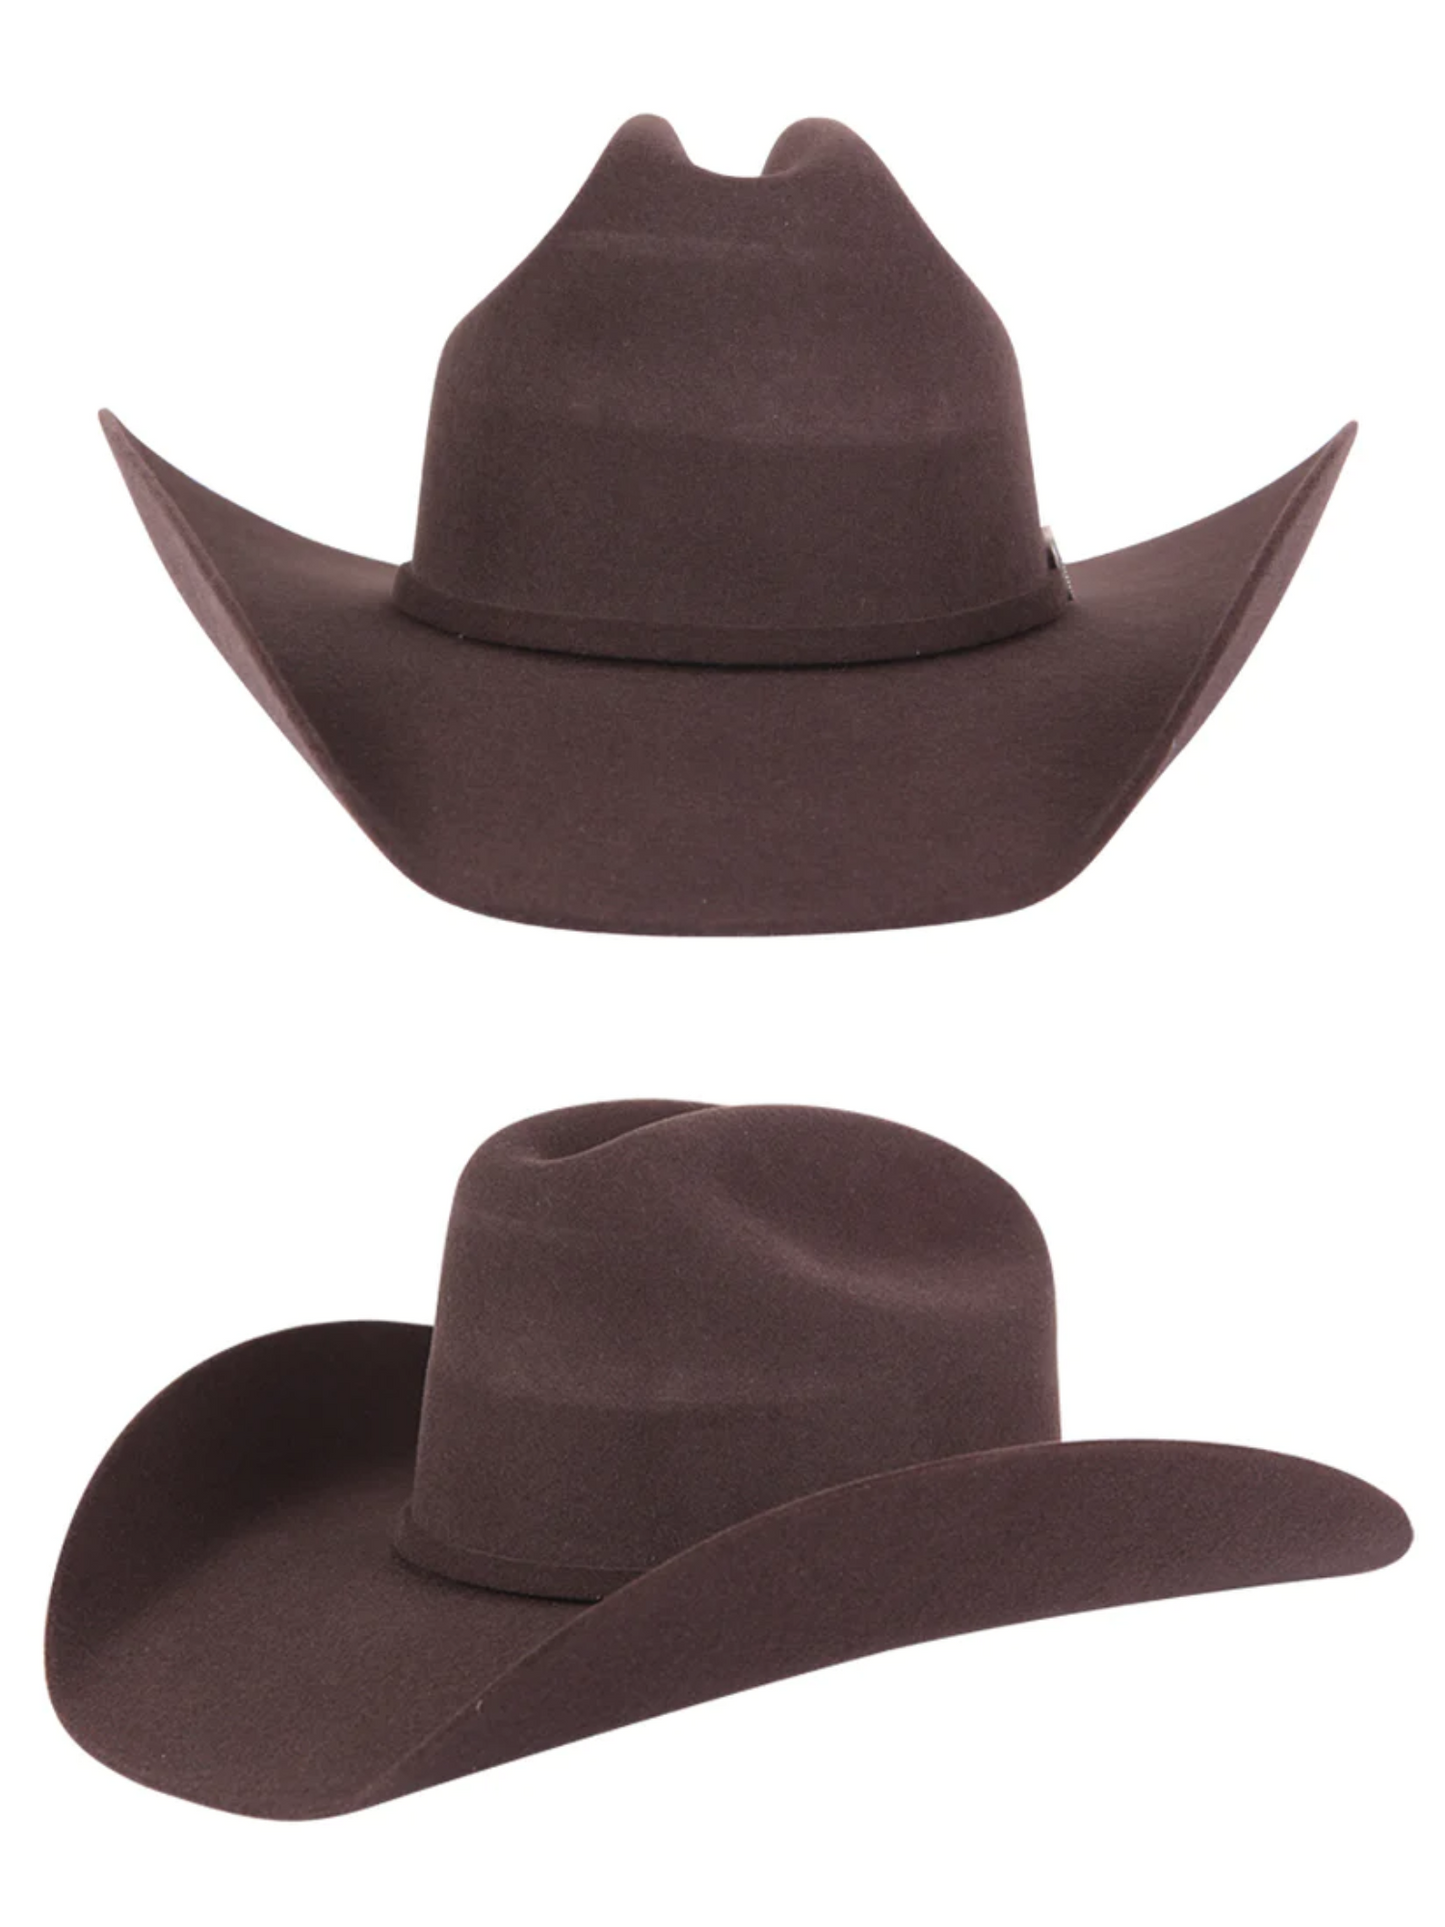 Texana Horma Marlboro 50X Lana para Hombre 'El Señor de los Cielos' - ID: 41668 Cowboy Hat El Señor de los Cielos 